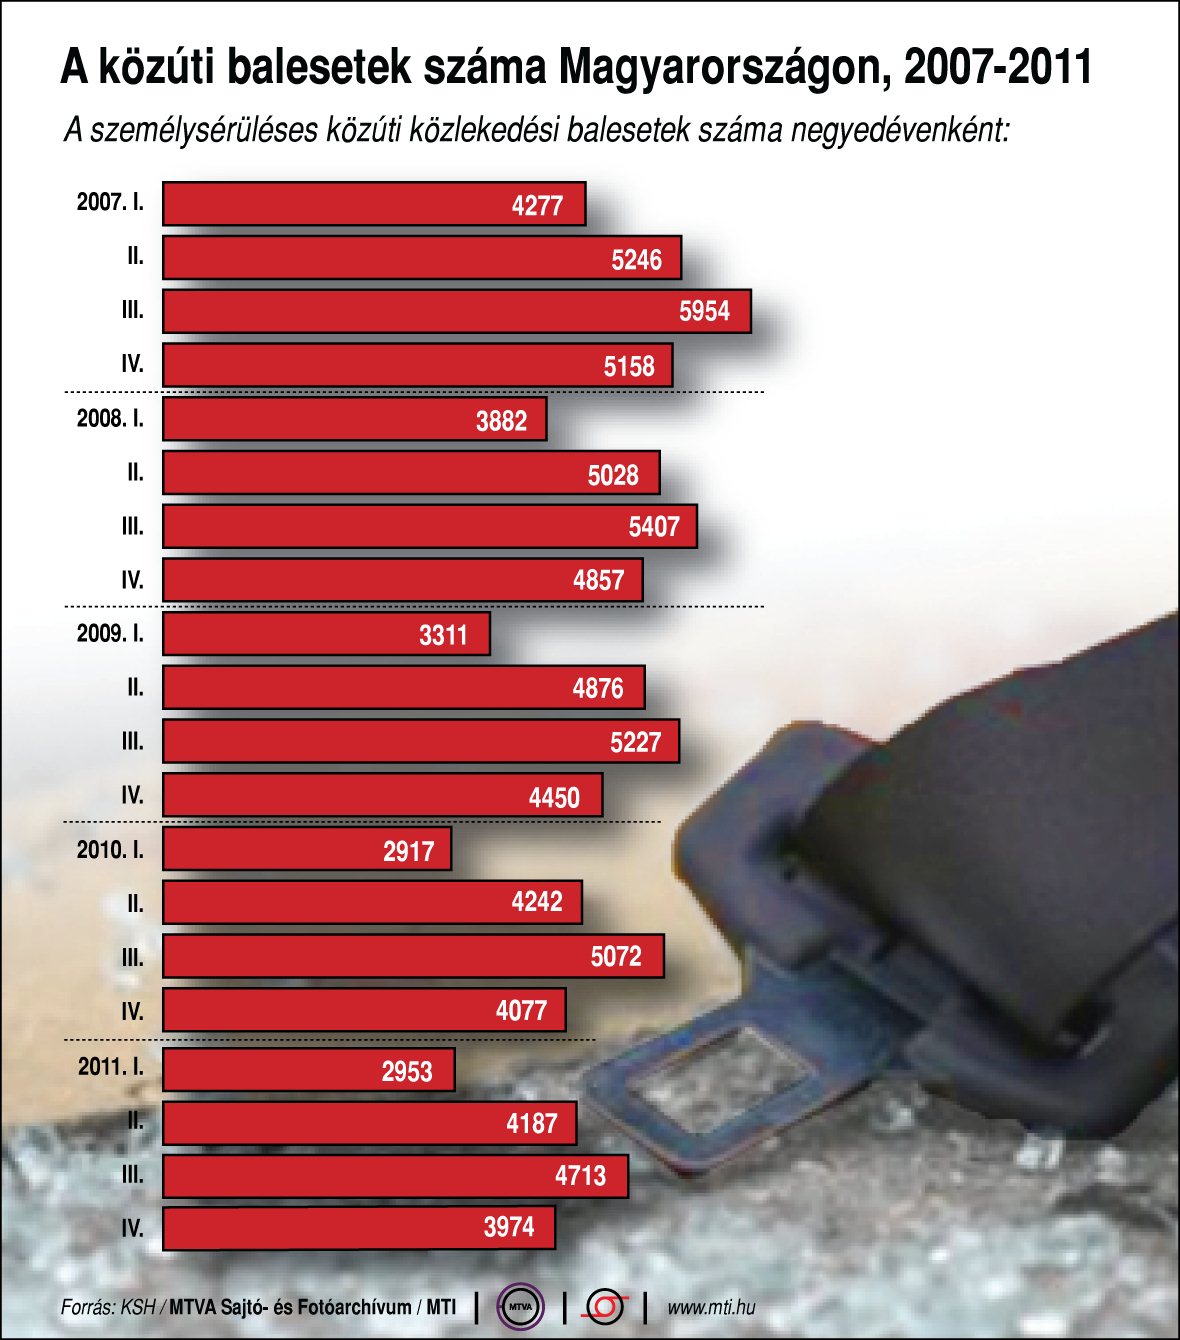 A személysérüléses közúti közlekedési balesetek száma Magyarországon (2007-2011